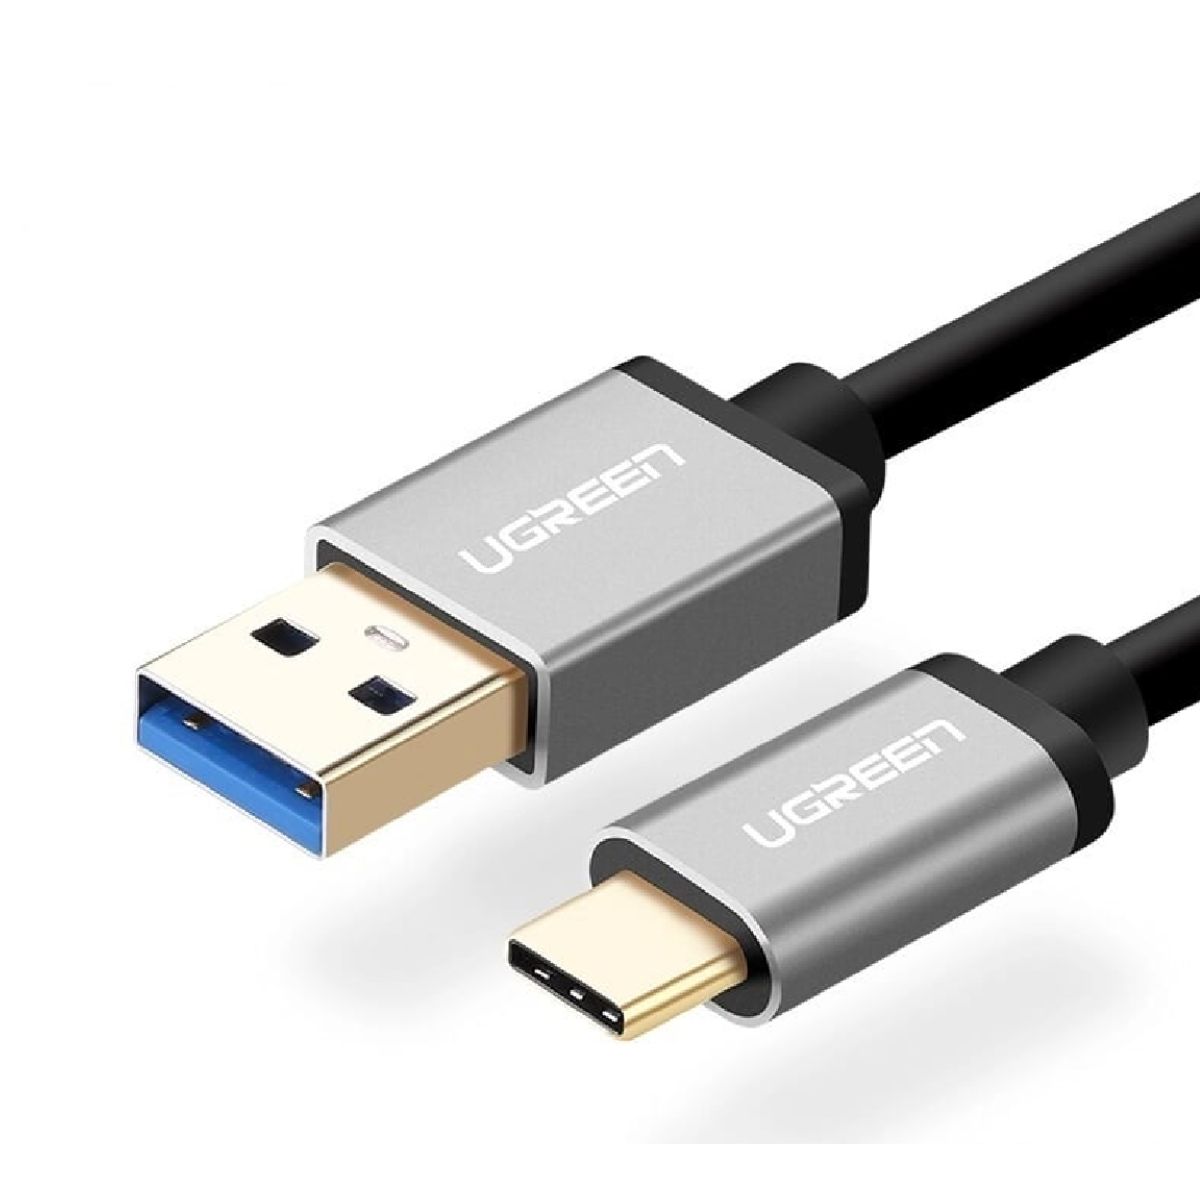 Cáp USB 3.0 sang USB type C Ugreen US187, 20287 chiều dài 1m, màu đen, tốc độ truyền tải 200MB/s